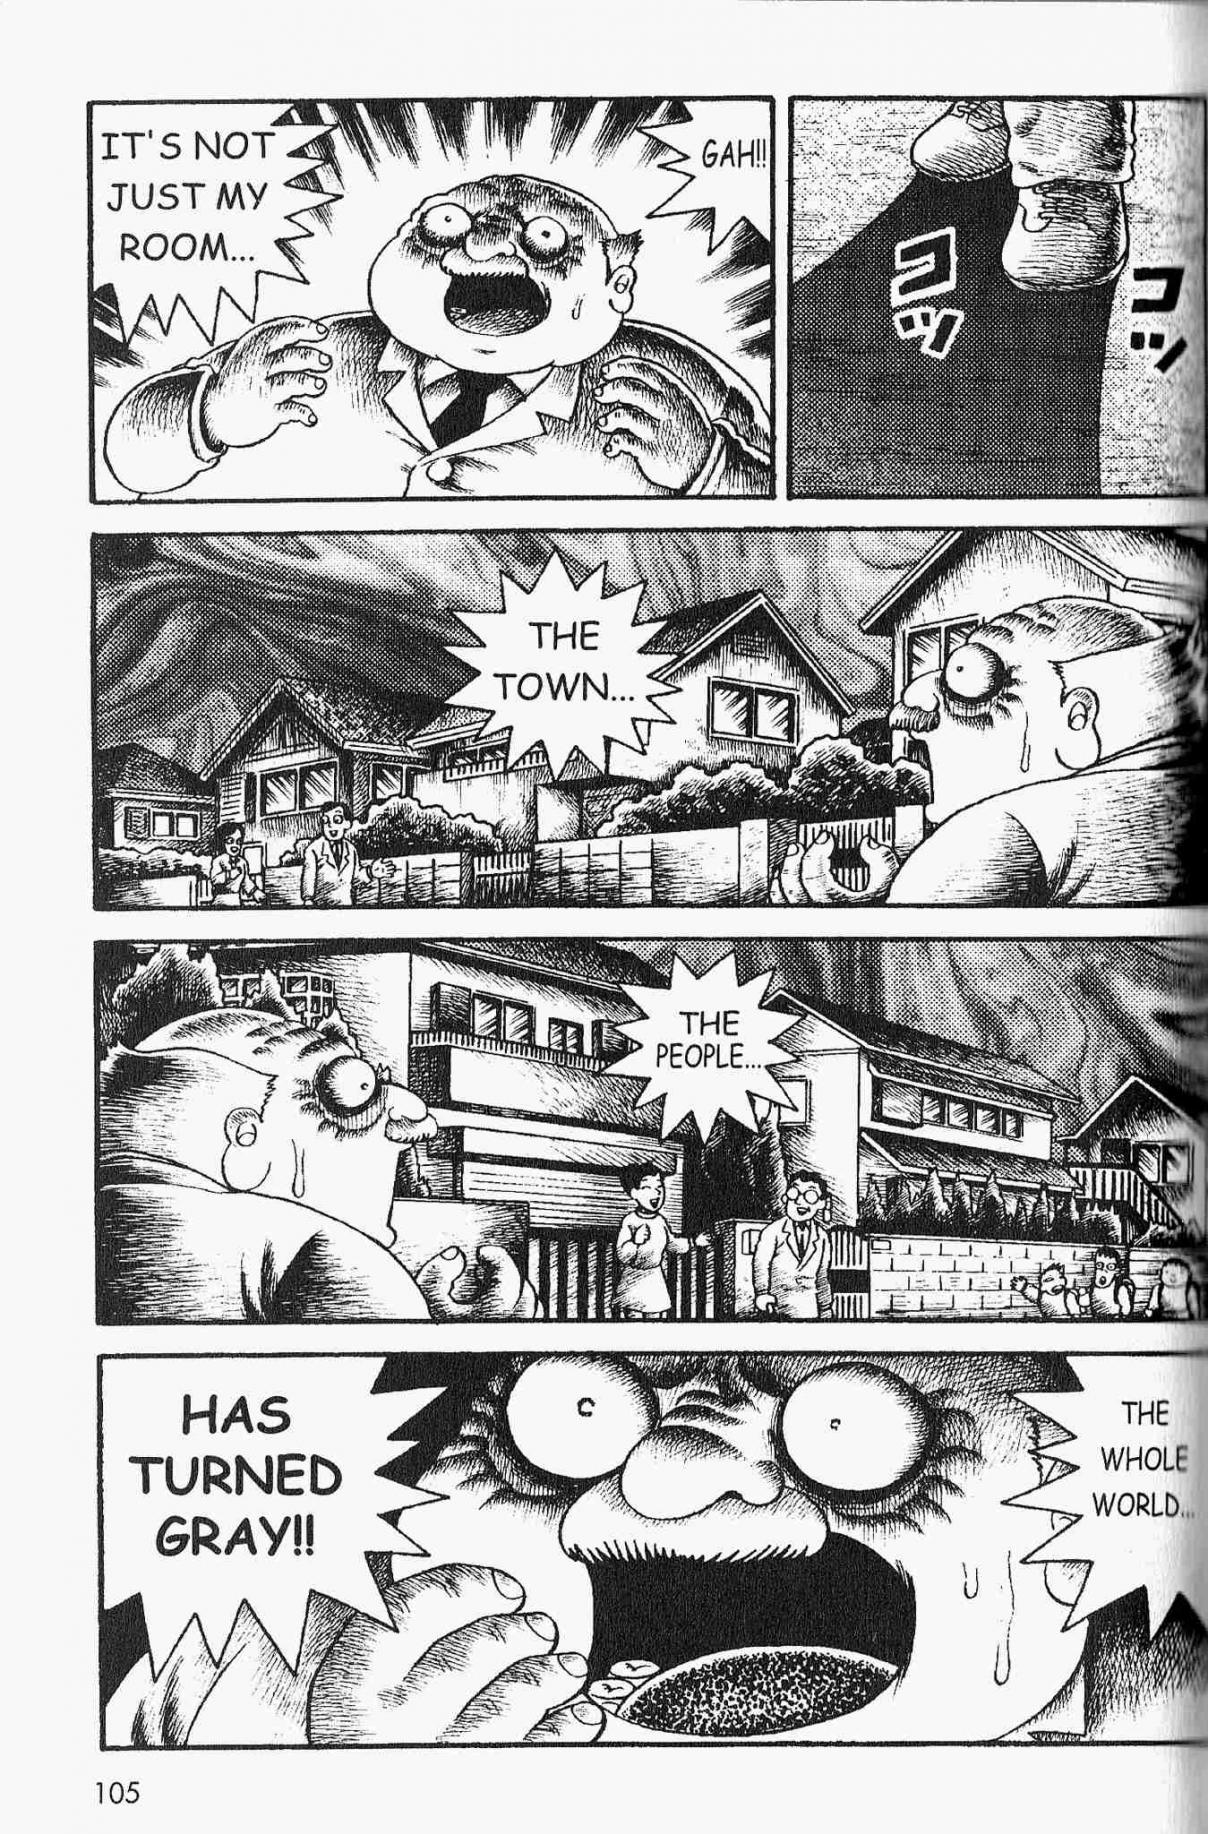 Kyoufu Gallery Vol. 1 Ch. 5 Horror in Gray